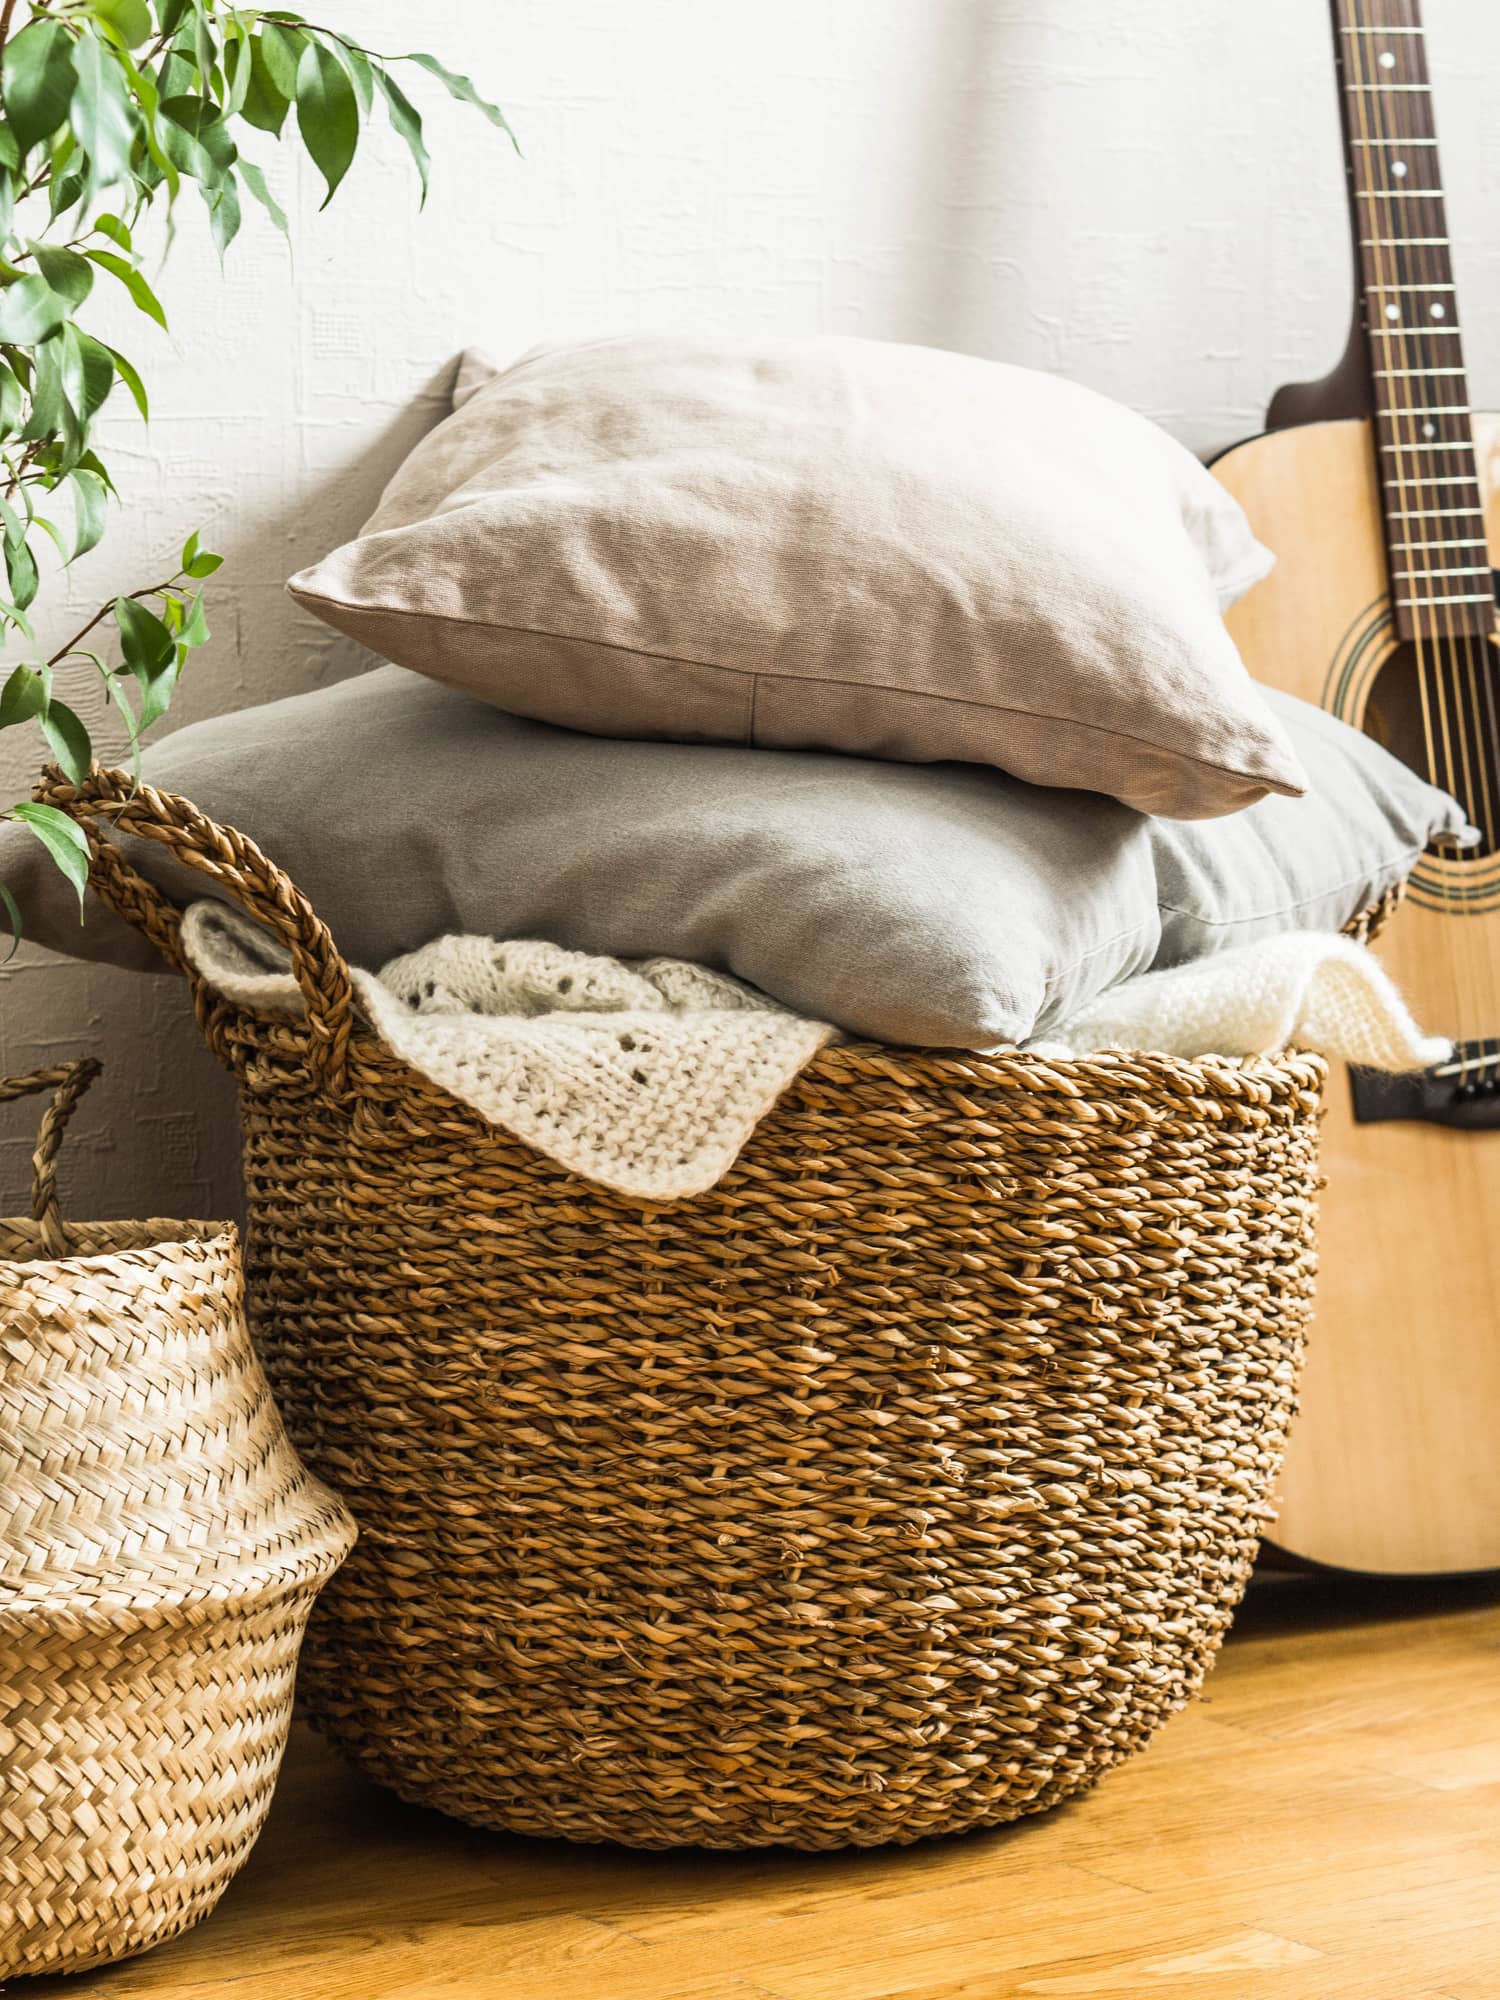 Ideas para decorar con cestas de mimbre - El Blog de Due-Home